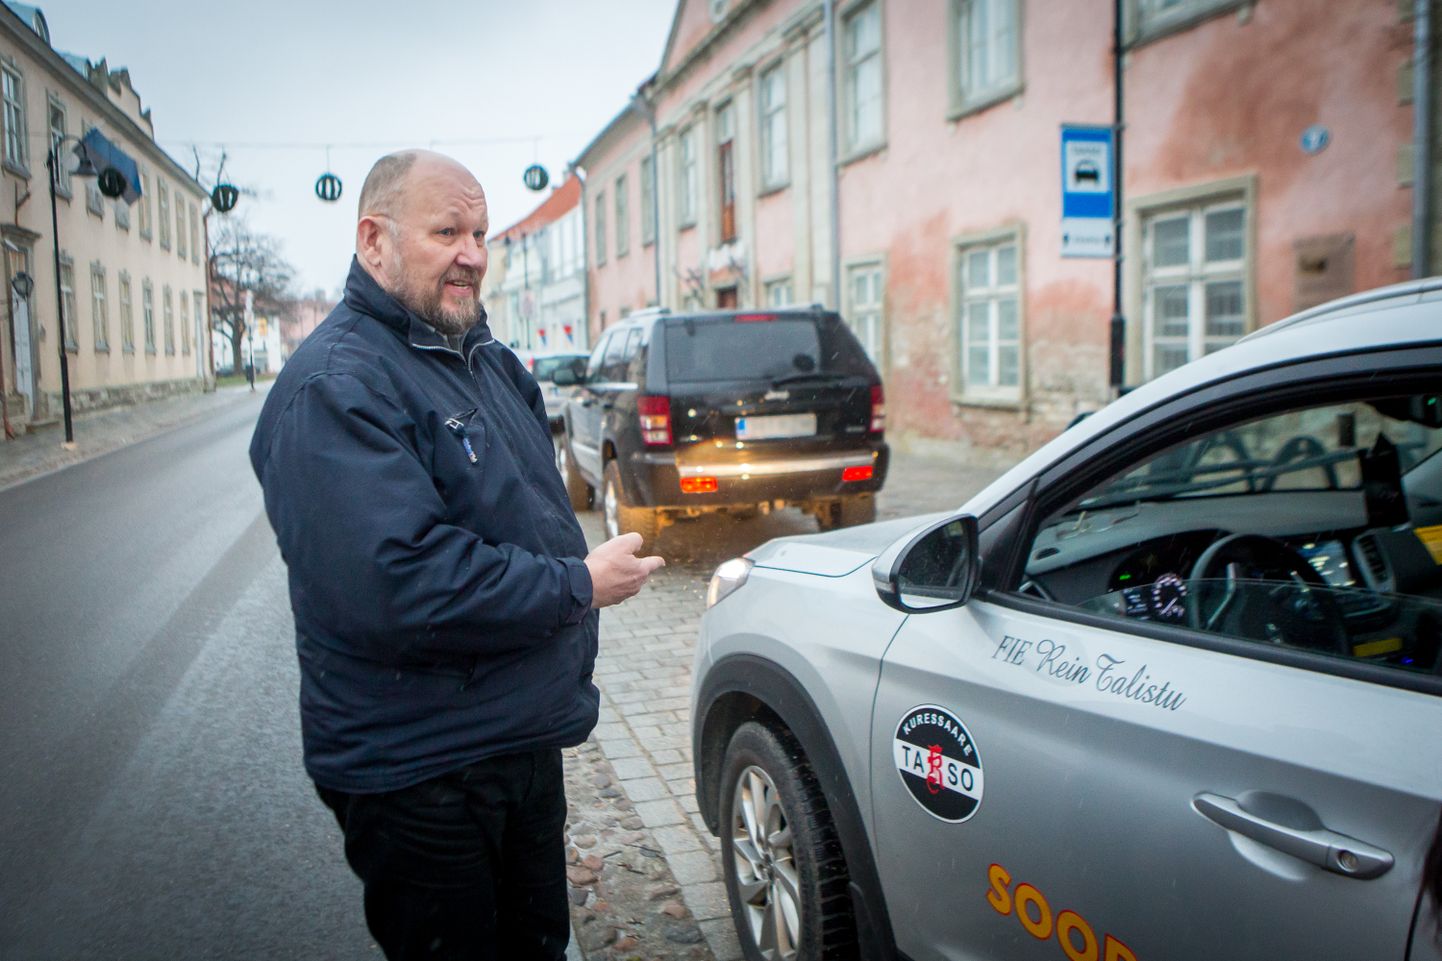 По словам Рейна Талисту, таксисты не могут припарковать на предназначенные для них парковосные места, поскольку там стоят чужие автомобили.